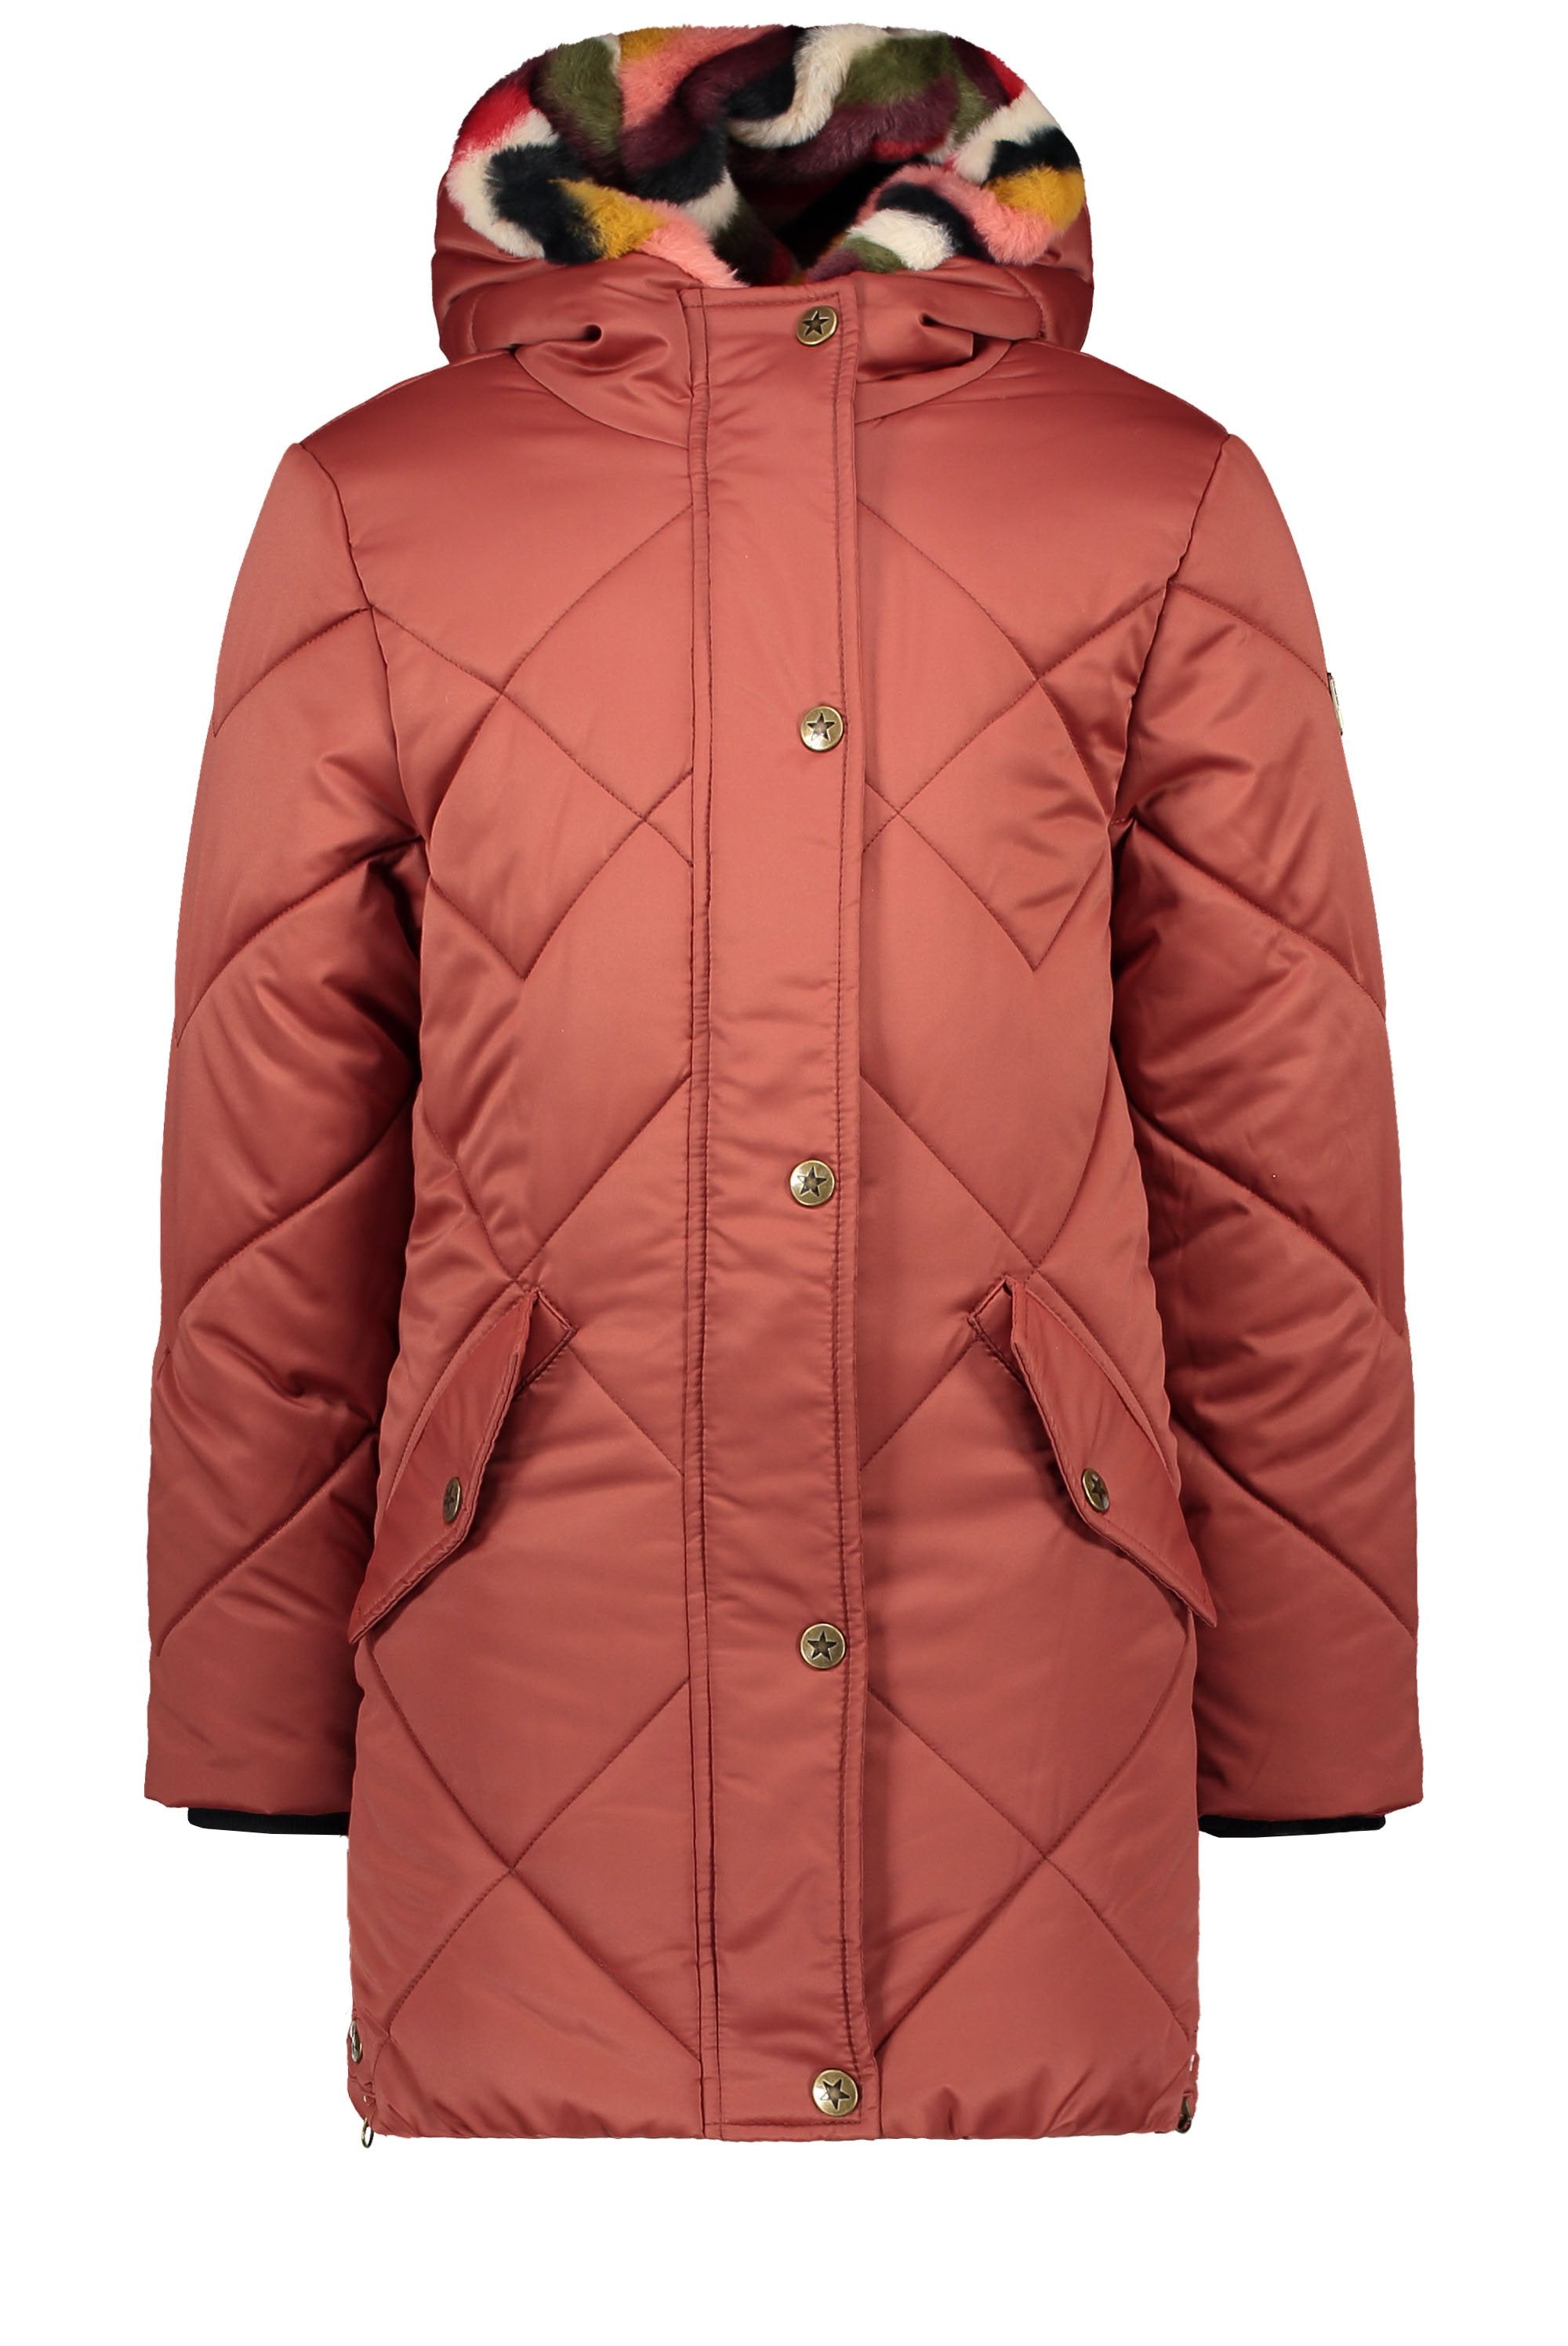 Meisjes Flo girls long hooded jacket, check quilting van Flo in de kleur Rust in maat 152.